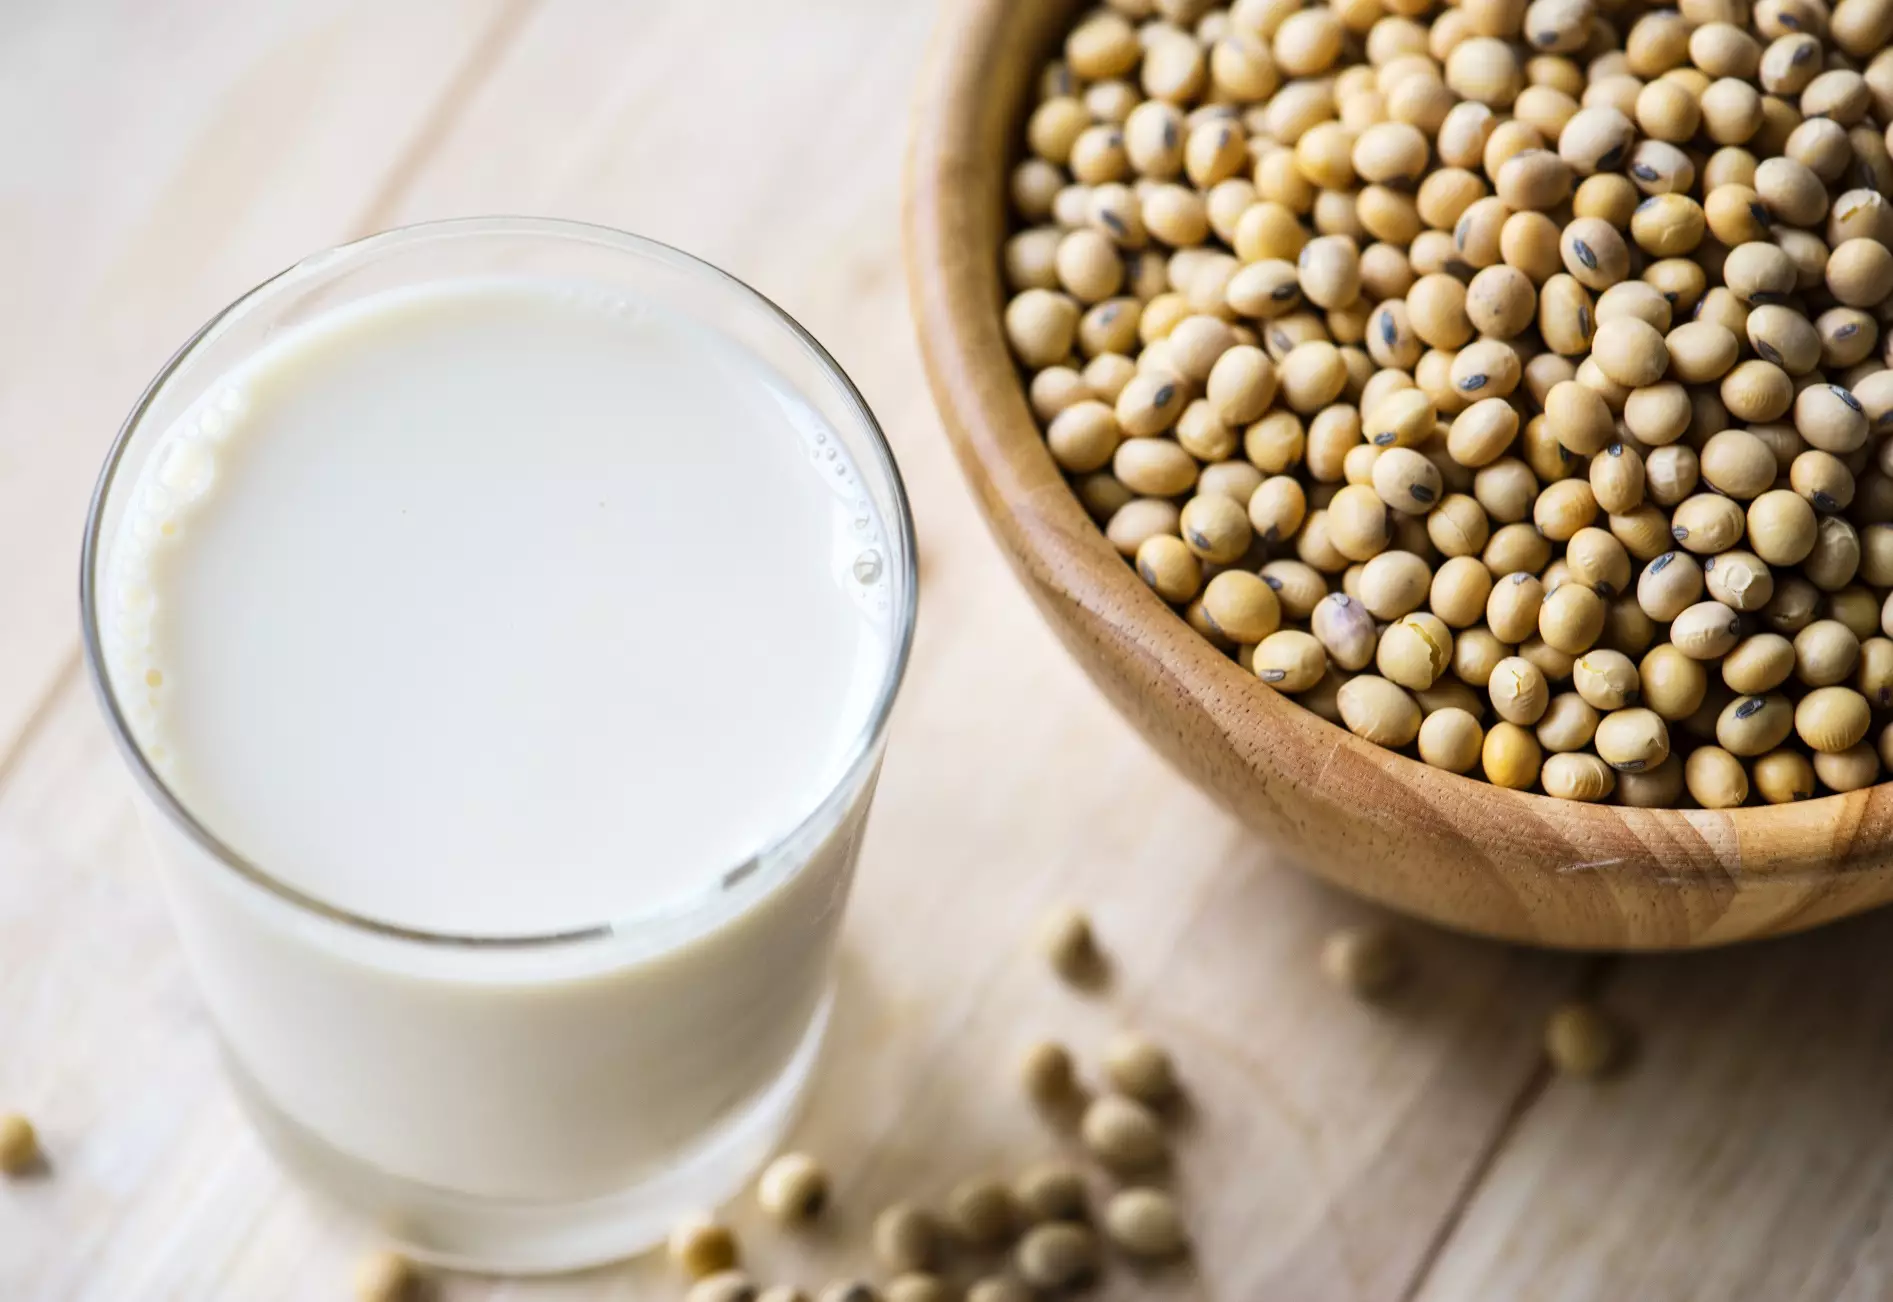 Растительное молоко нужно пить в умеренных количествах